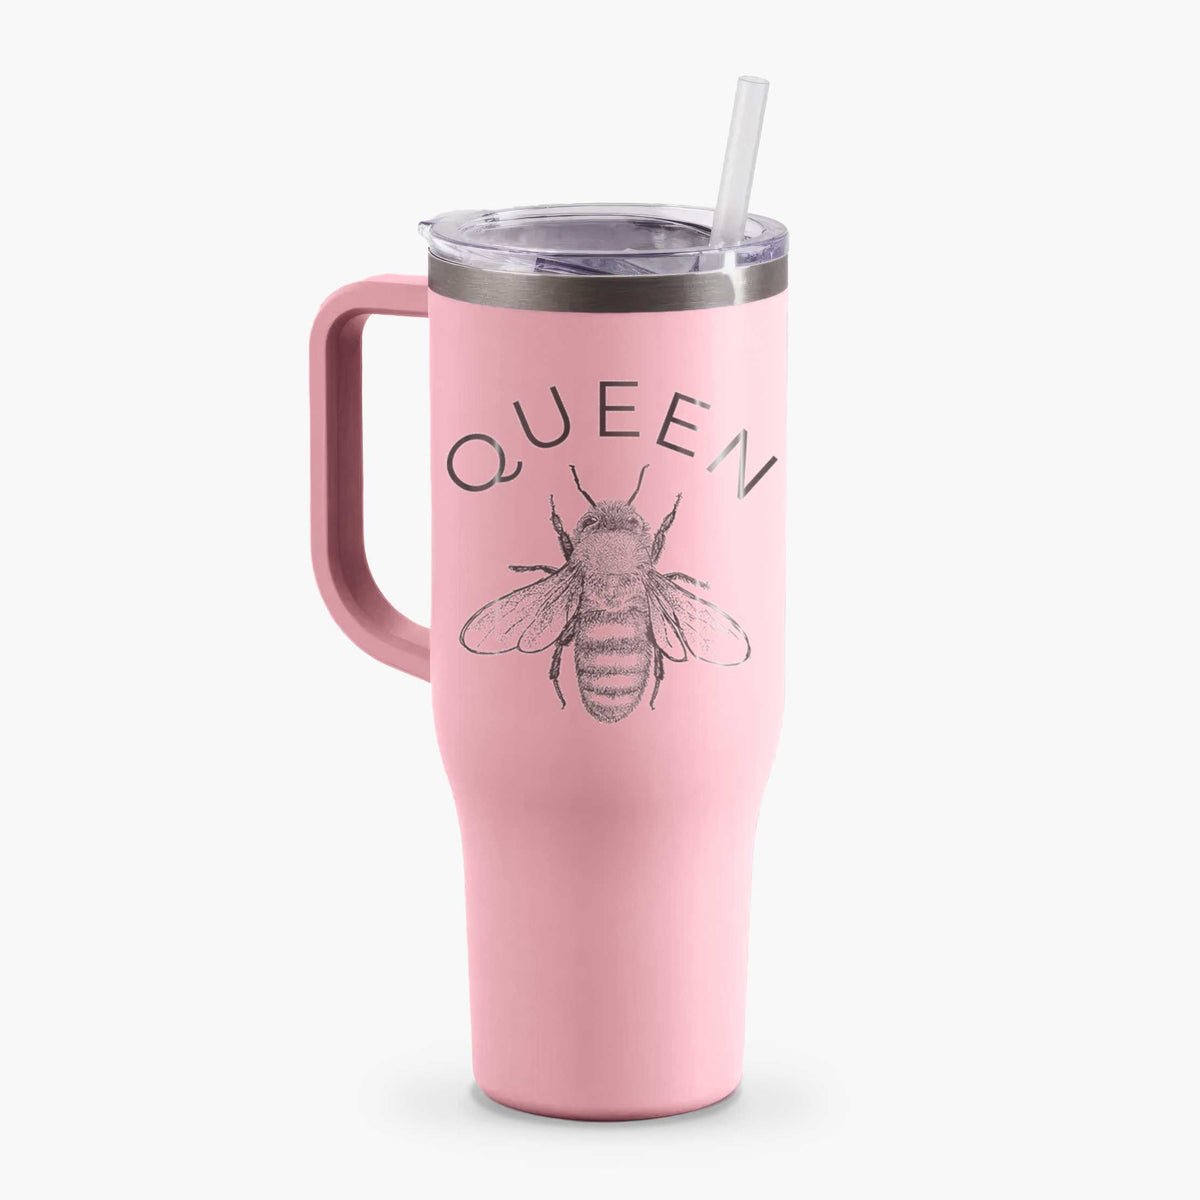 Queen Bee - 40oz Tumbler with Handle